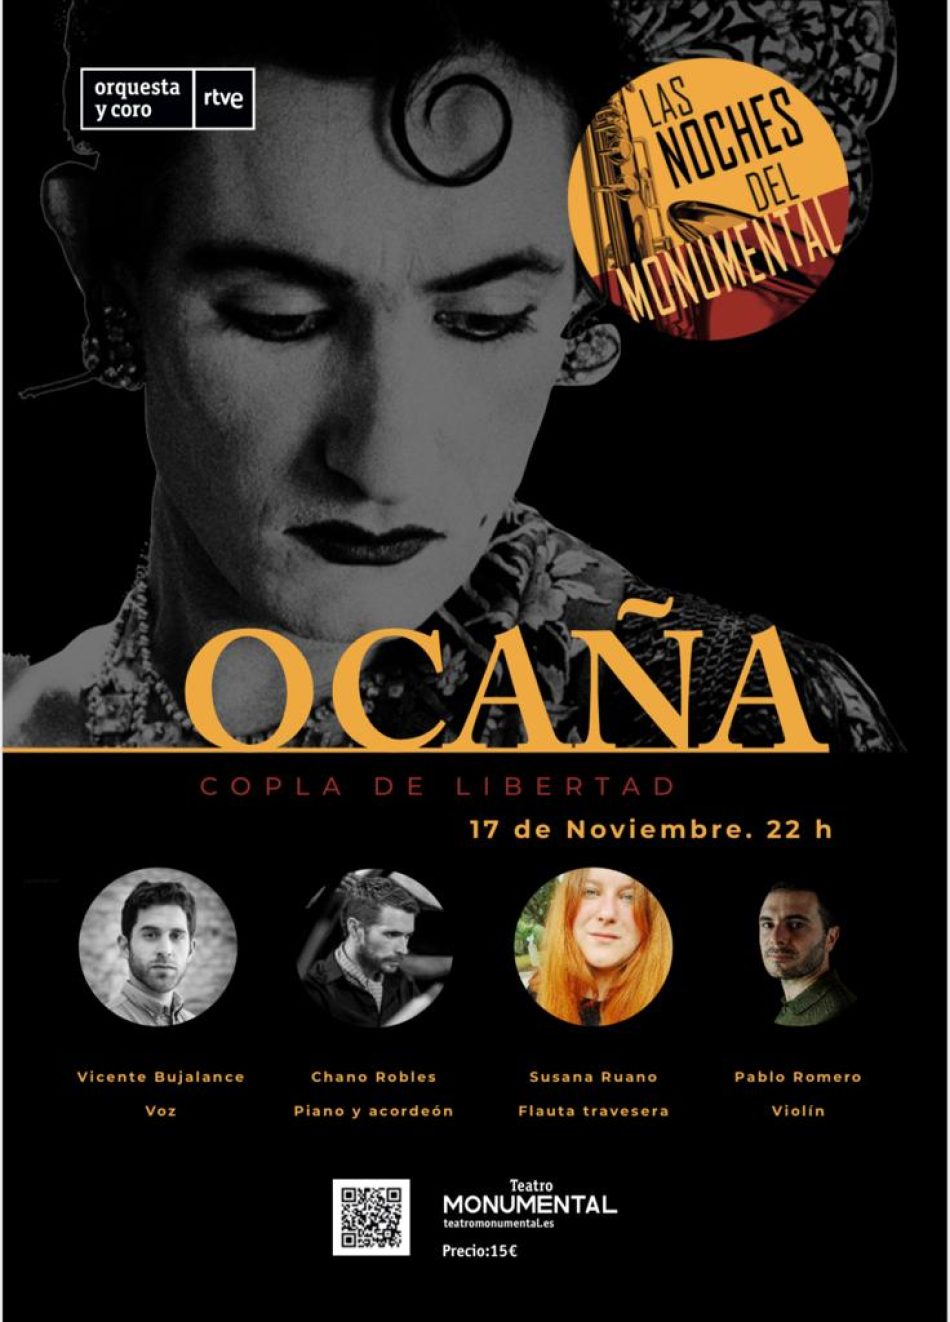 «Ocaña, copla de libertad» se presenta con un estreno en «Las noches del monumental» de RTVE